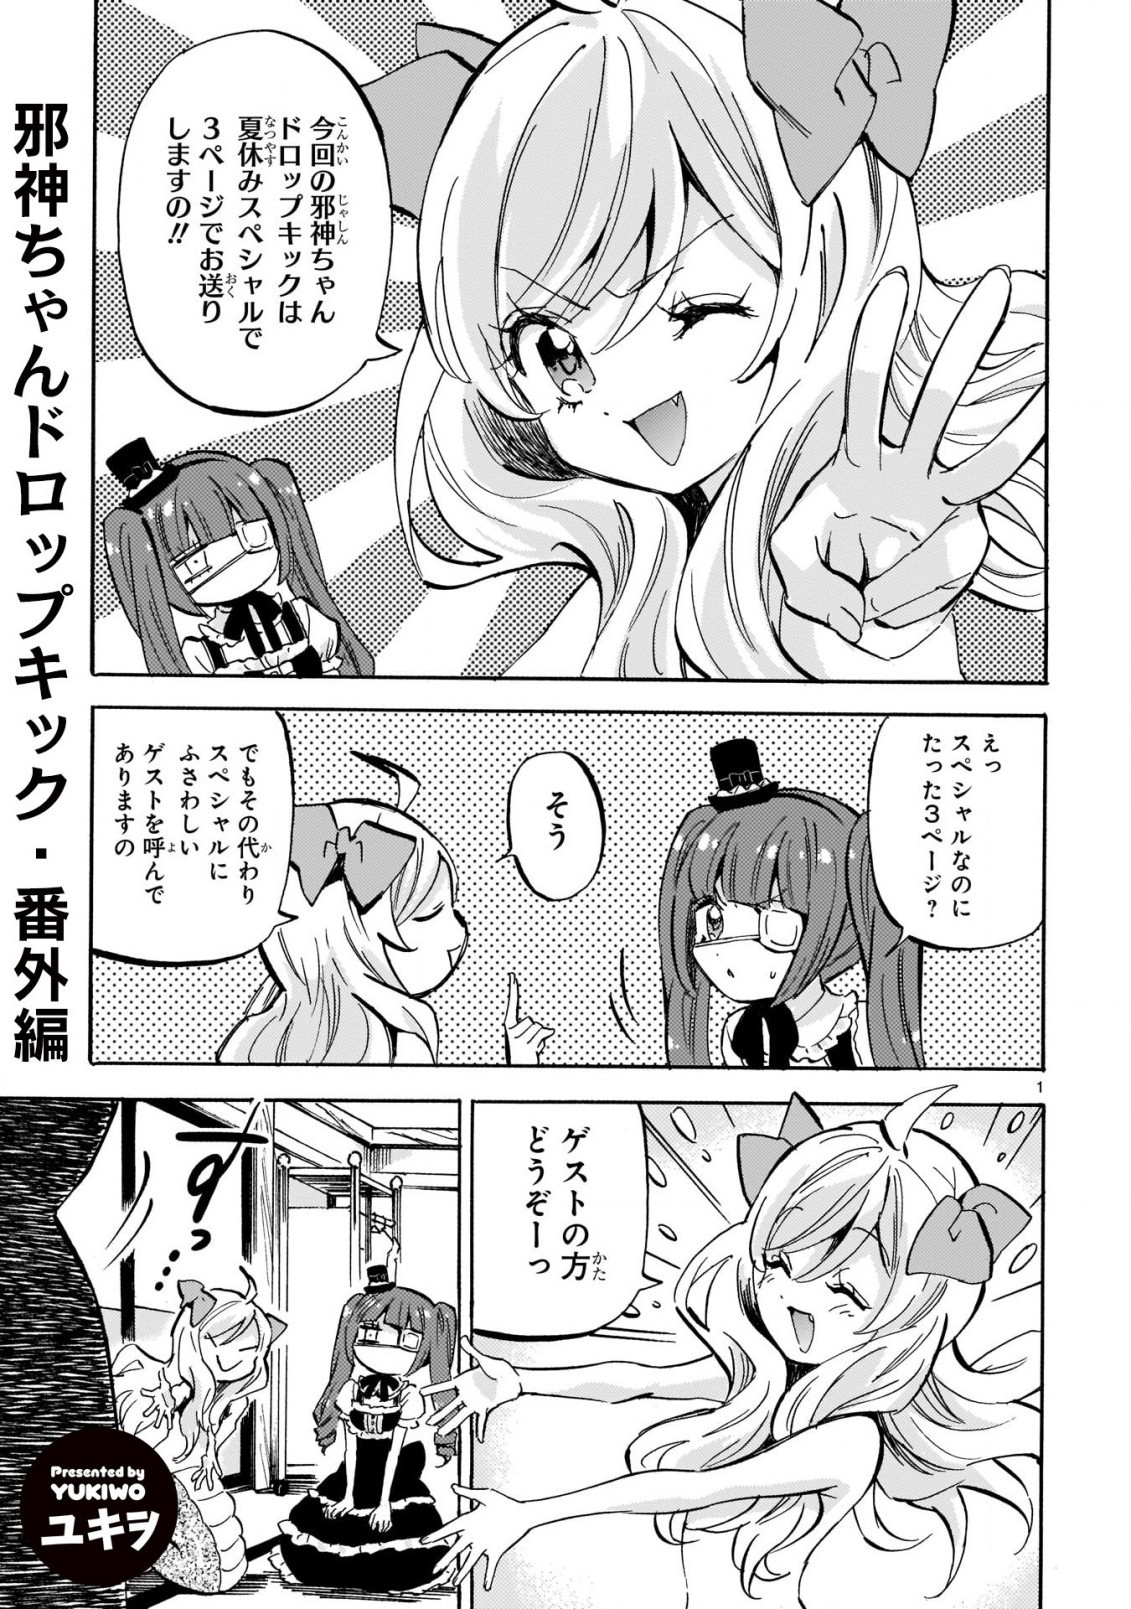 Jashin-chan Dropkick - Chapter 198.5 - Page 1